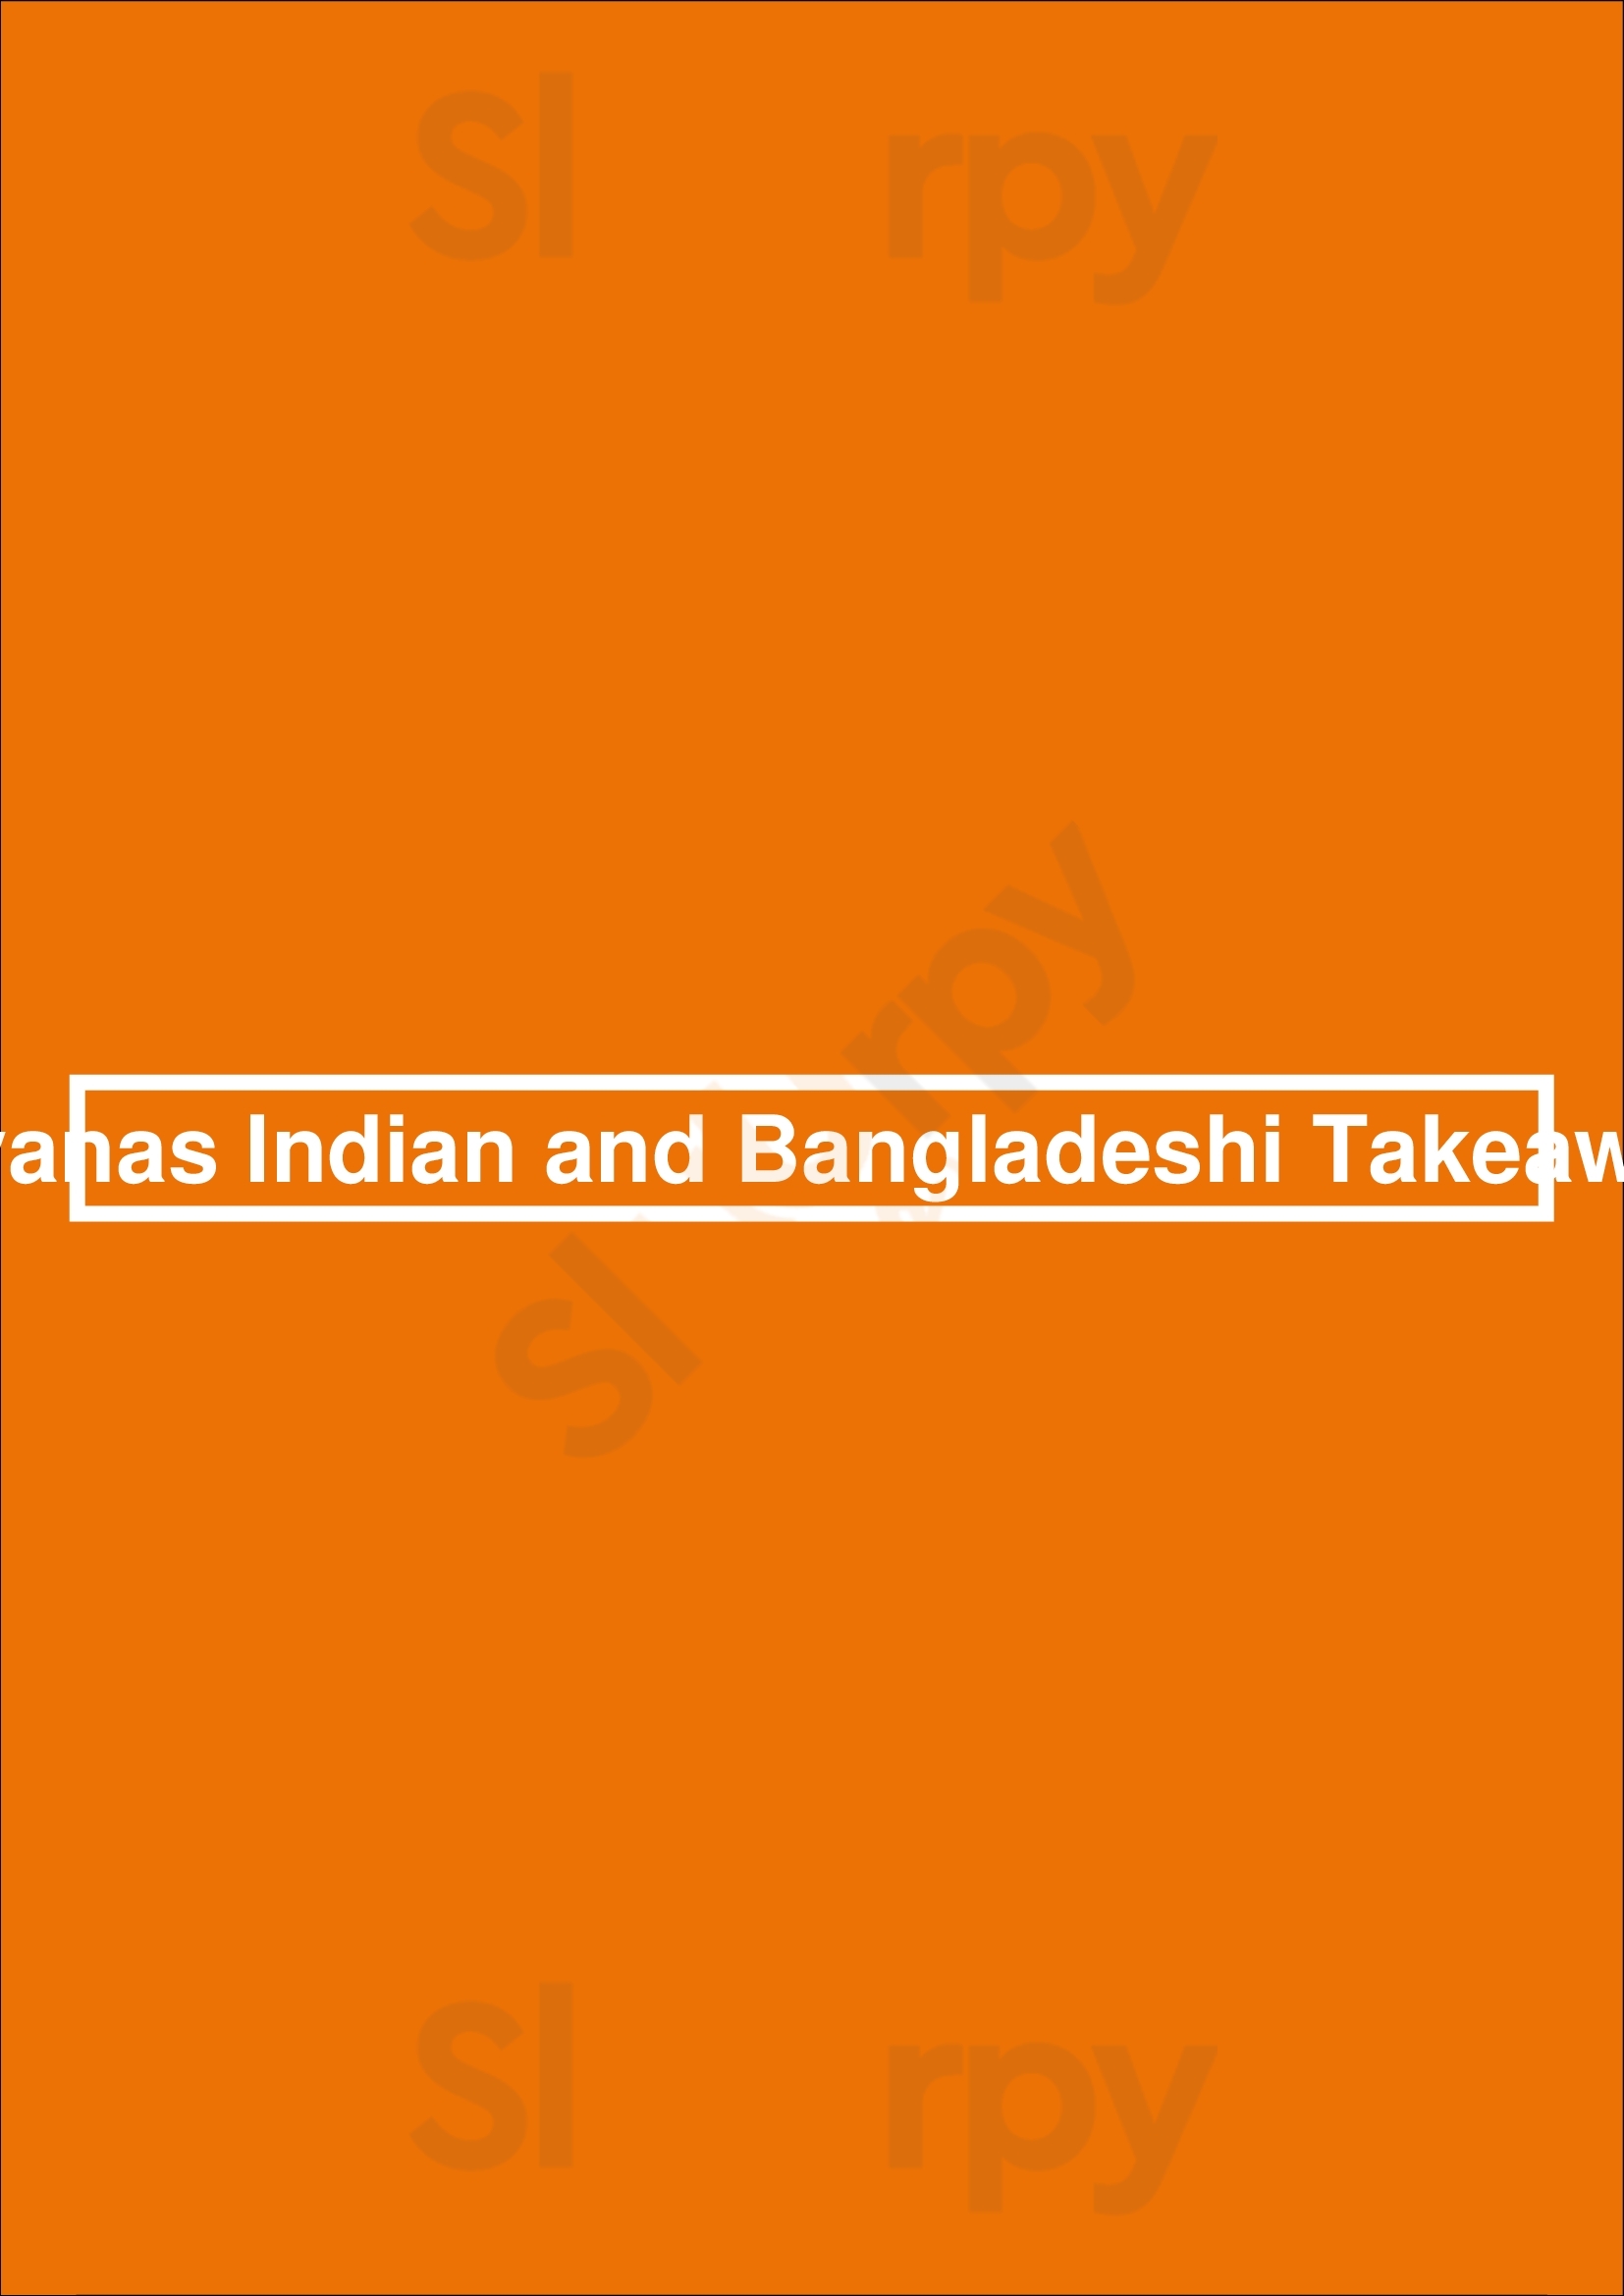 Liyanas Indian And Bangladeshi Takeaway Strood Menu - 1